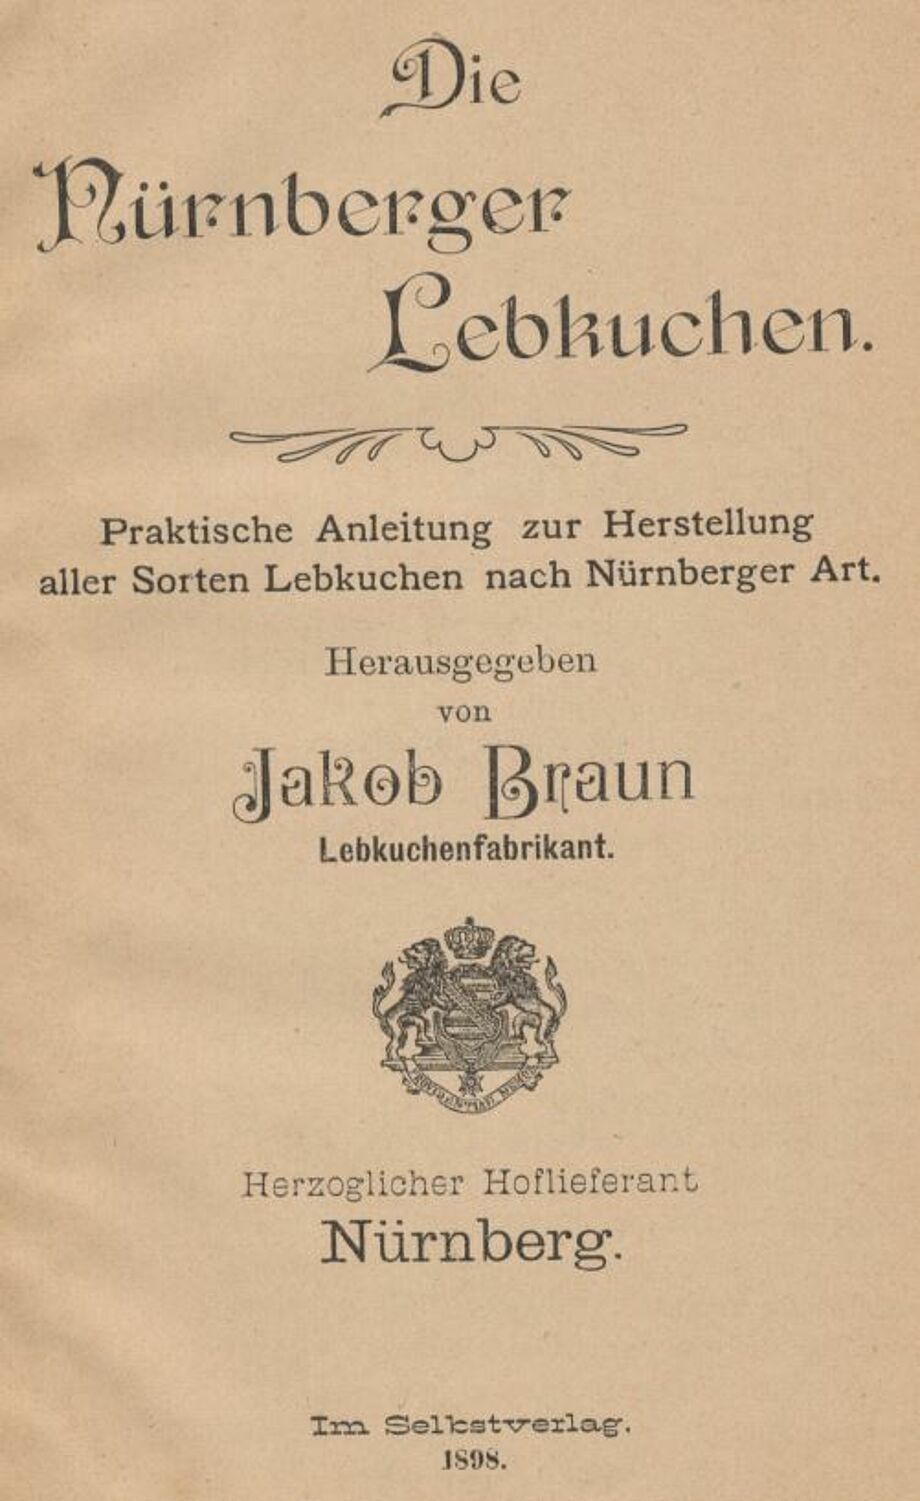 Rezeptsammlung des Nürnberger Lebkuchenfabrikanten Jakob Braun